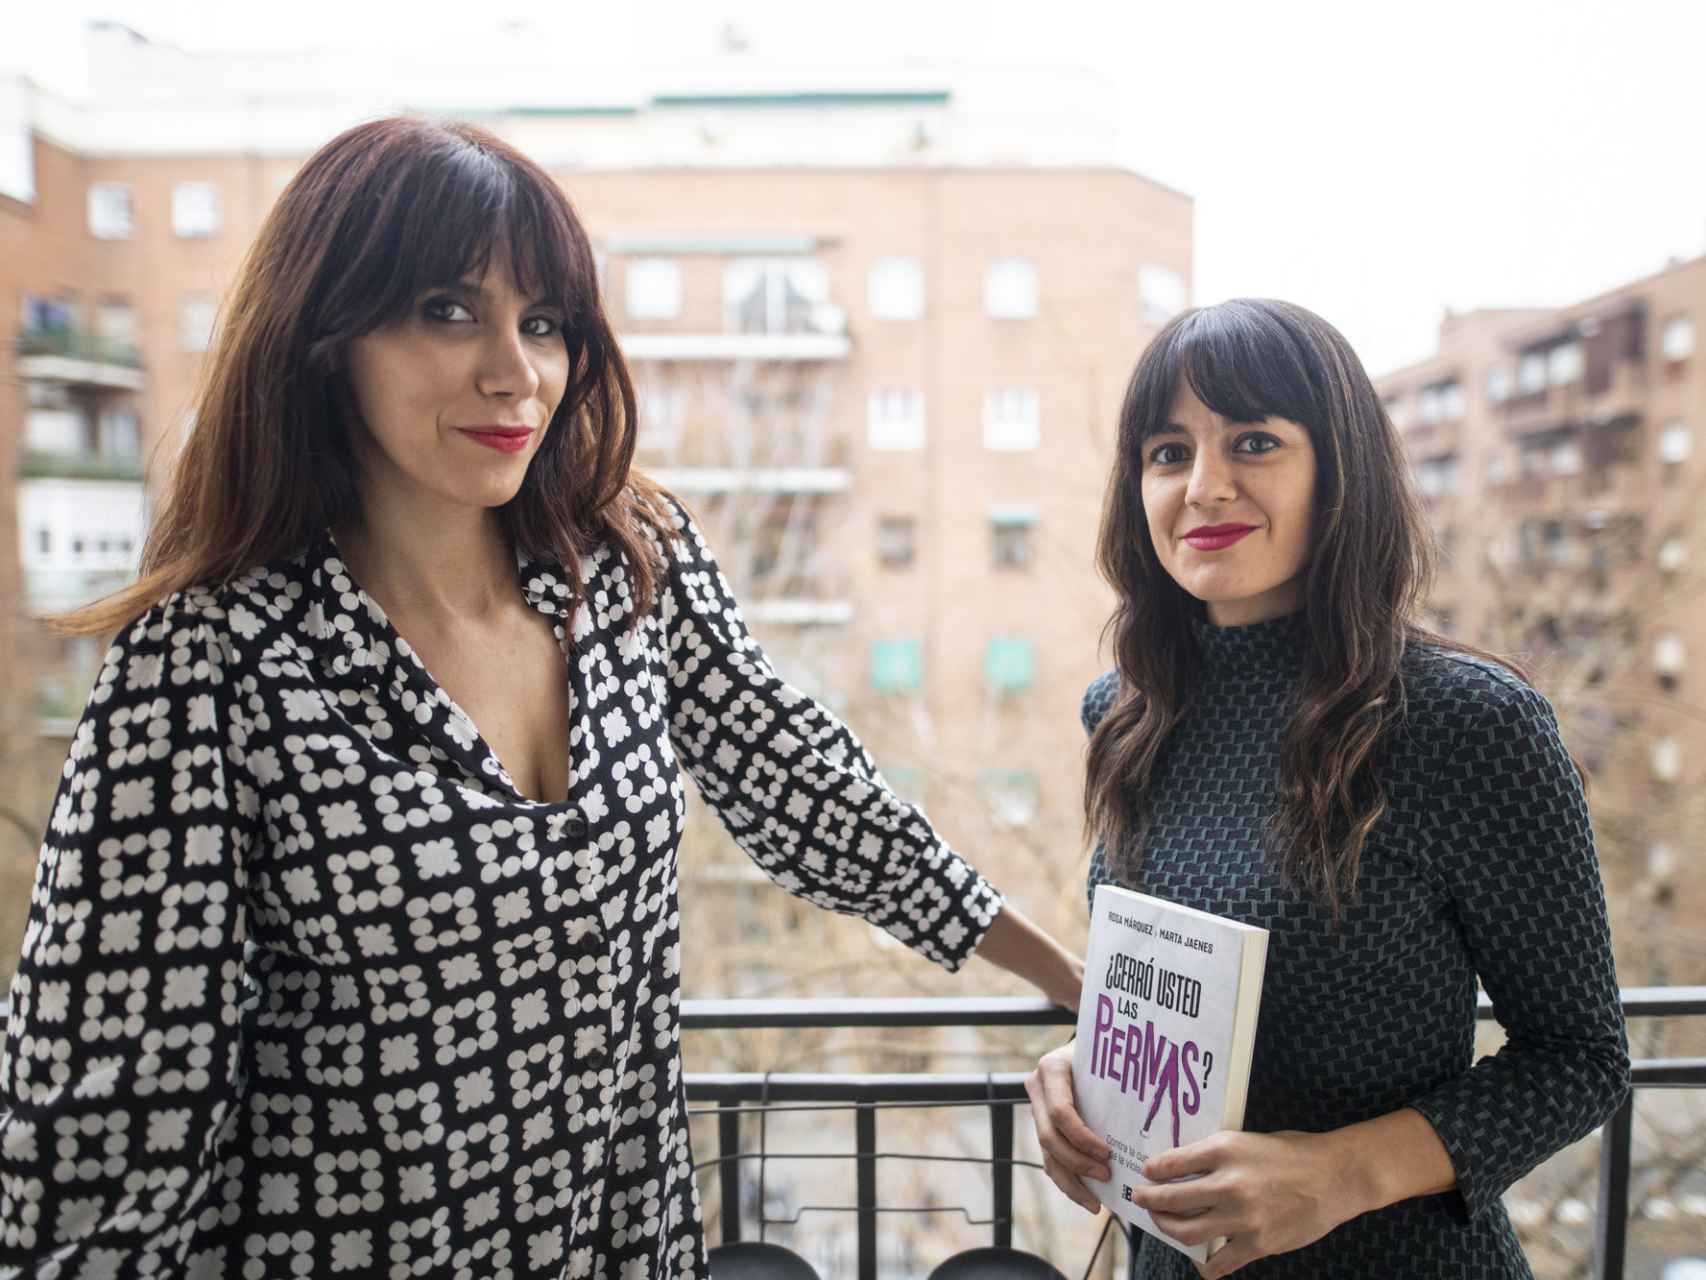 Rosa Márquez y Marta Jaenes, autoras de ¿Cerró usted las piernas?